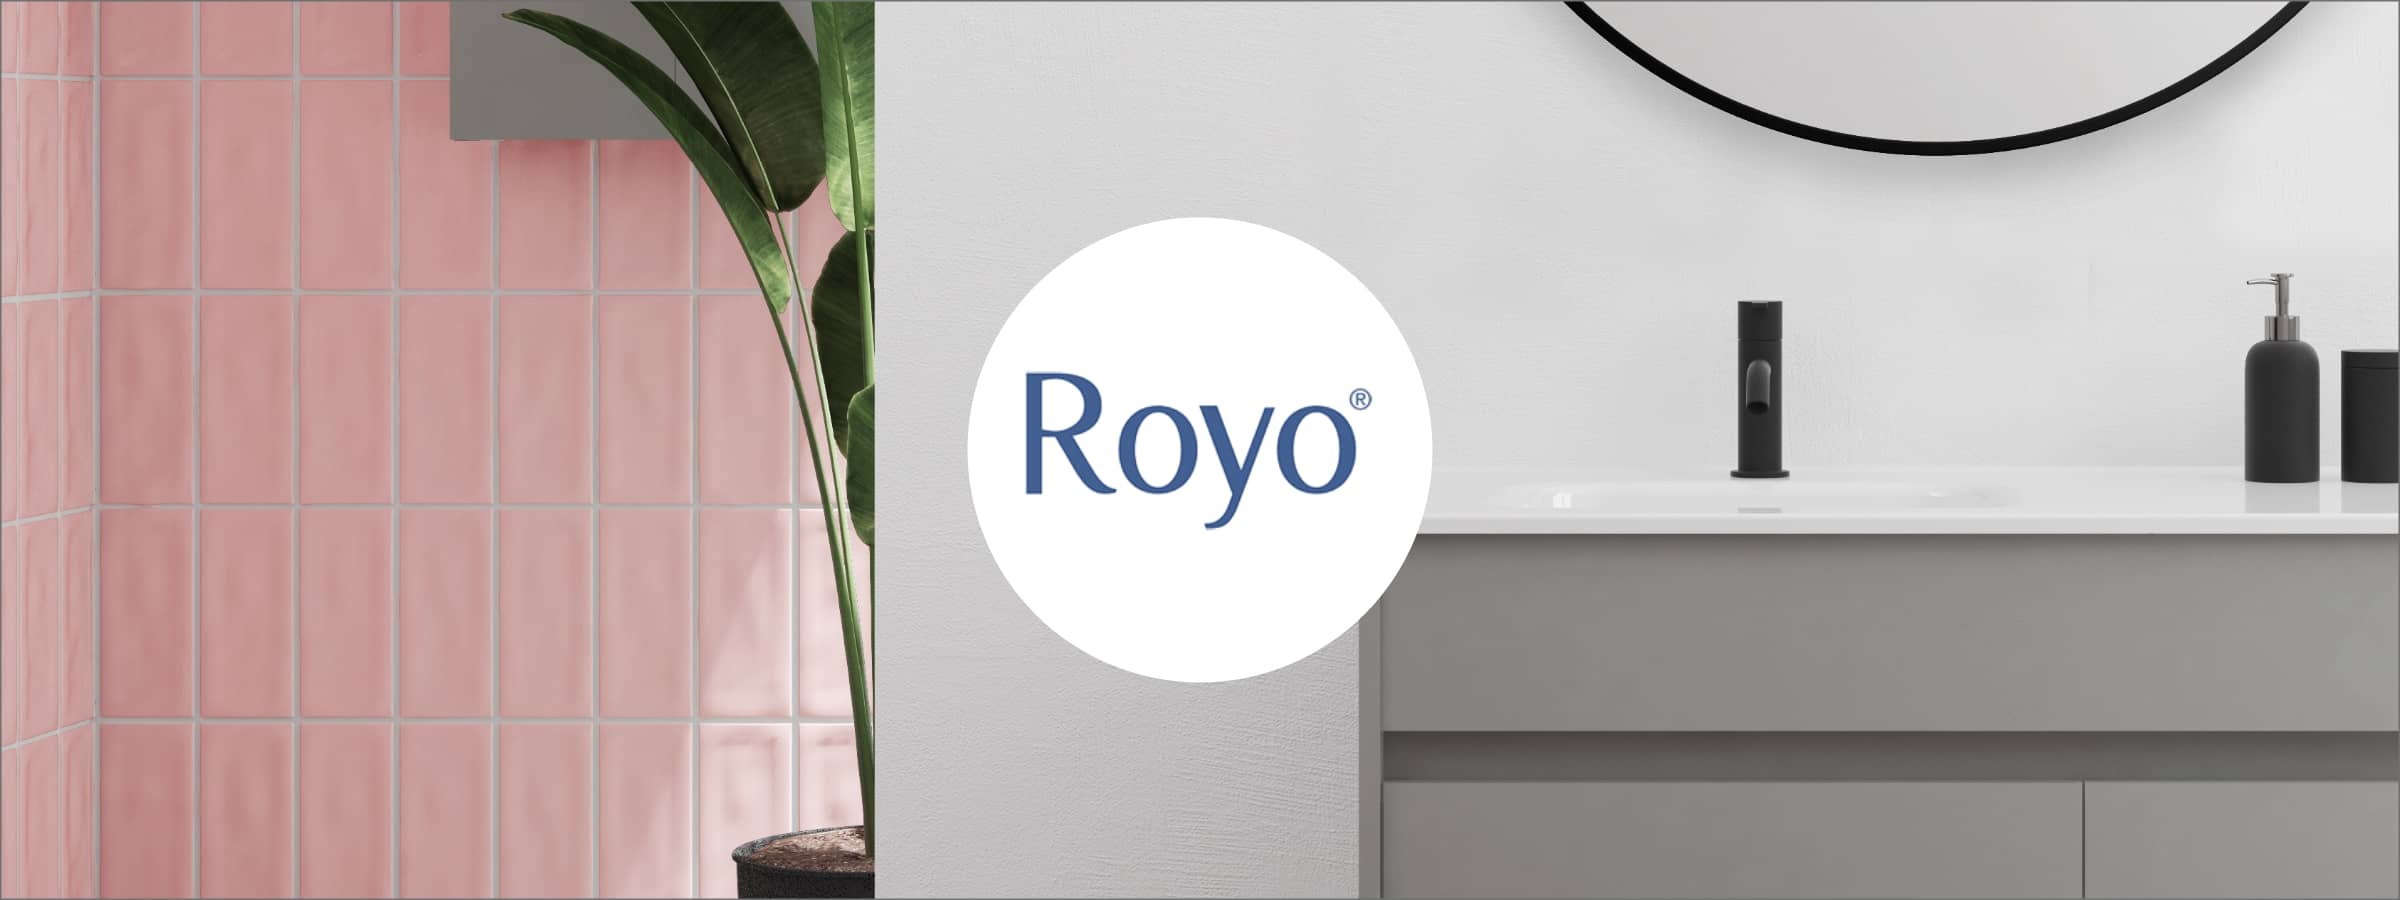 Colecciones y productos de la marca - Royo Group